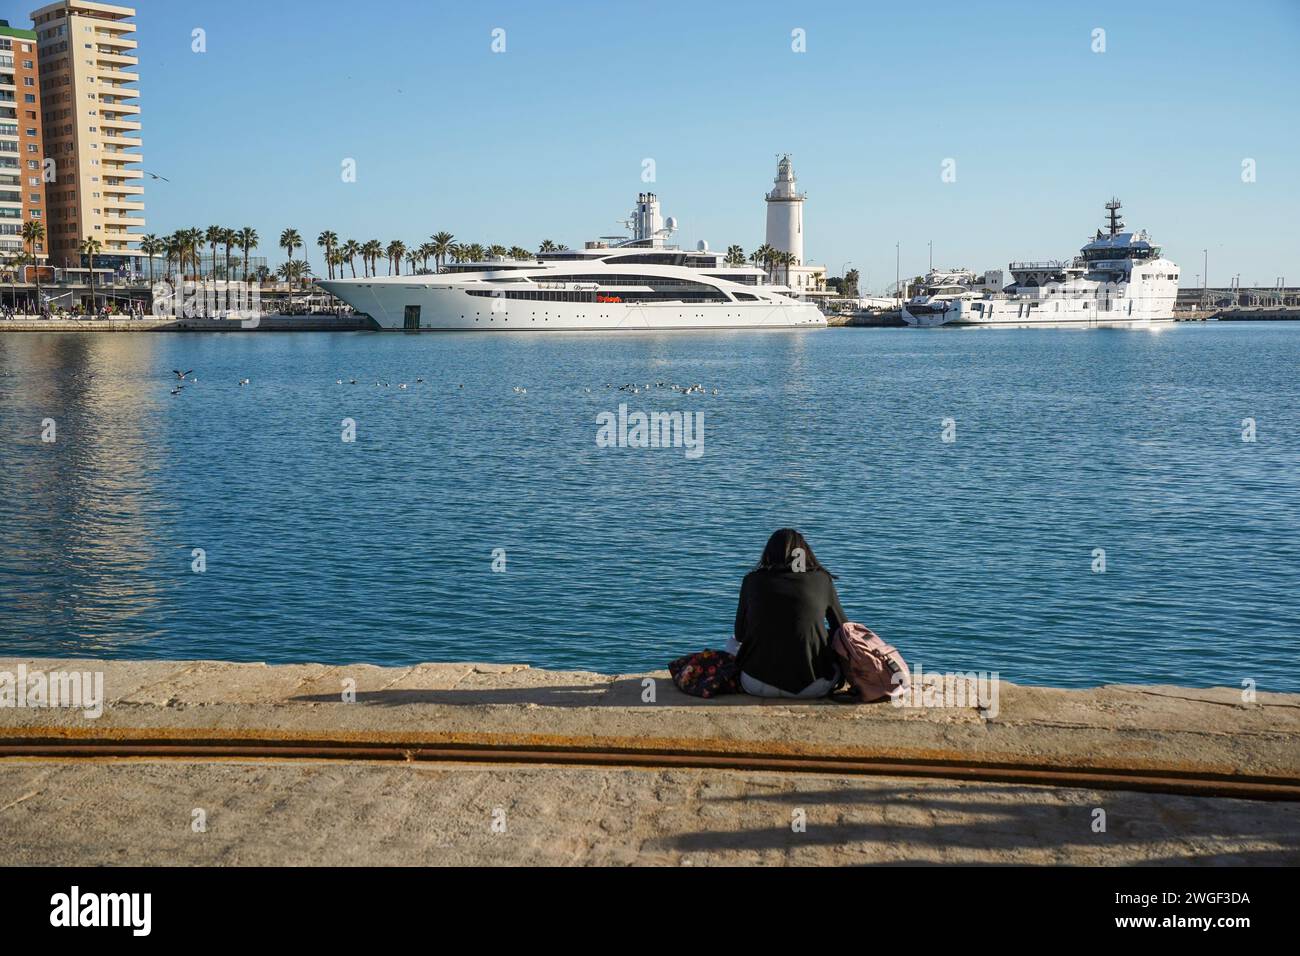 Ein Mädchen sitzt vor Megayacht, Superyacht, Dynasty überwintert im Hafen von Malaga, Costa del Sol, Spanien. Stockfoto